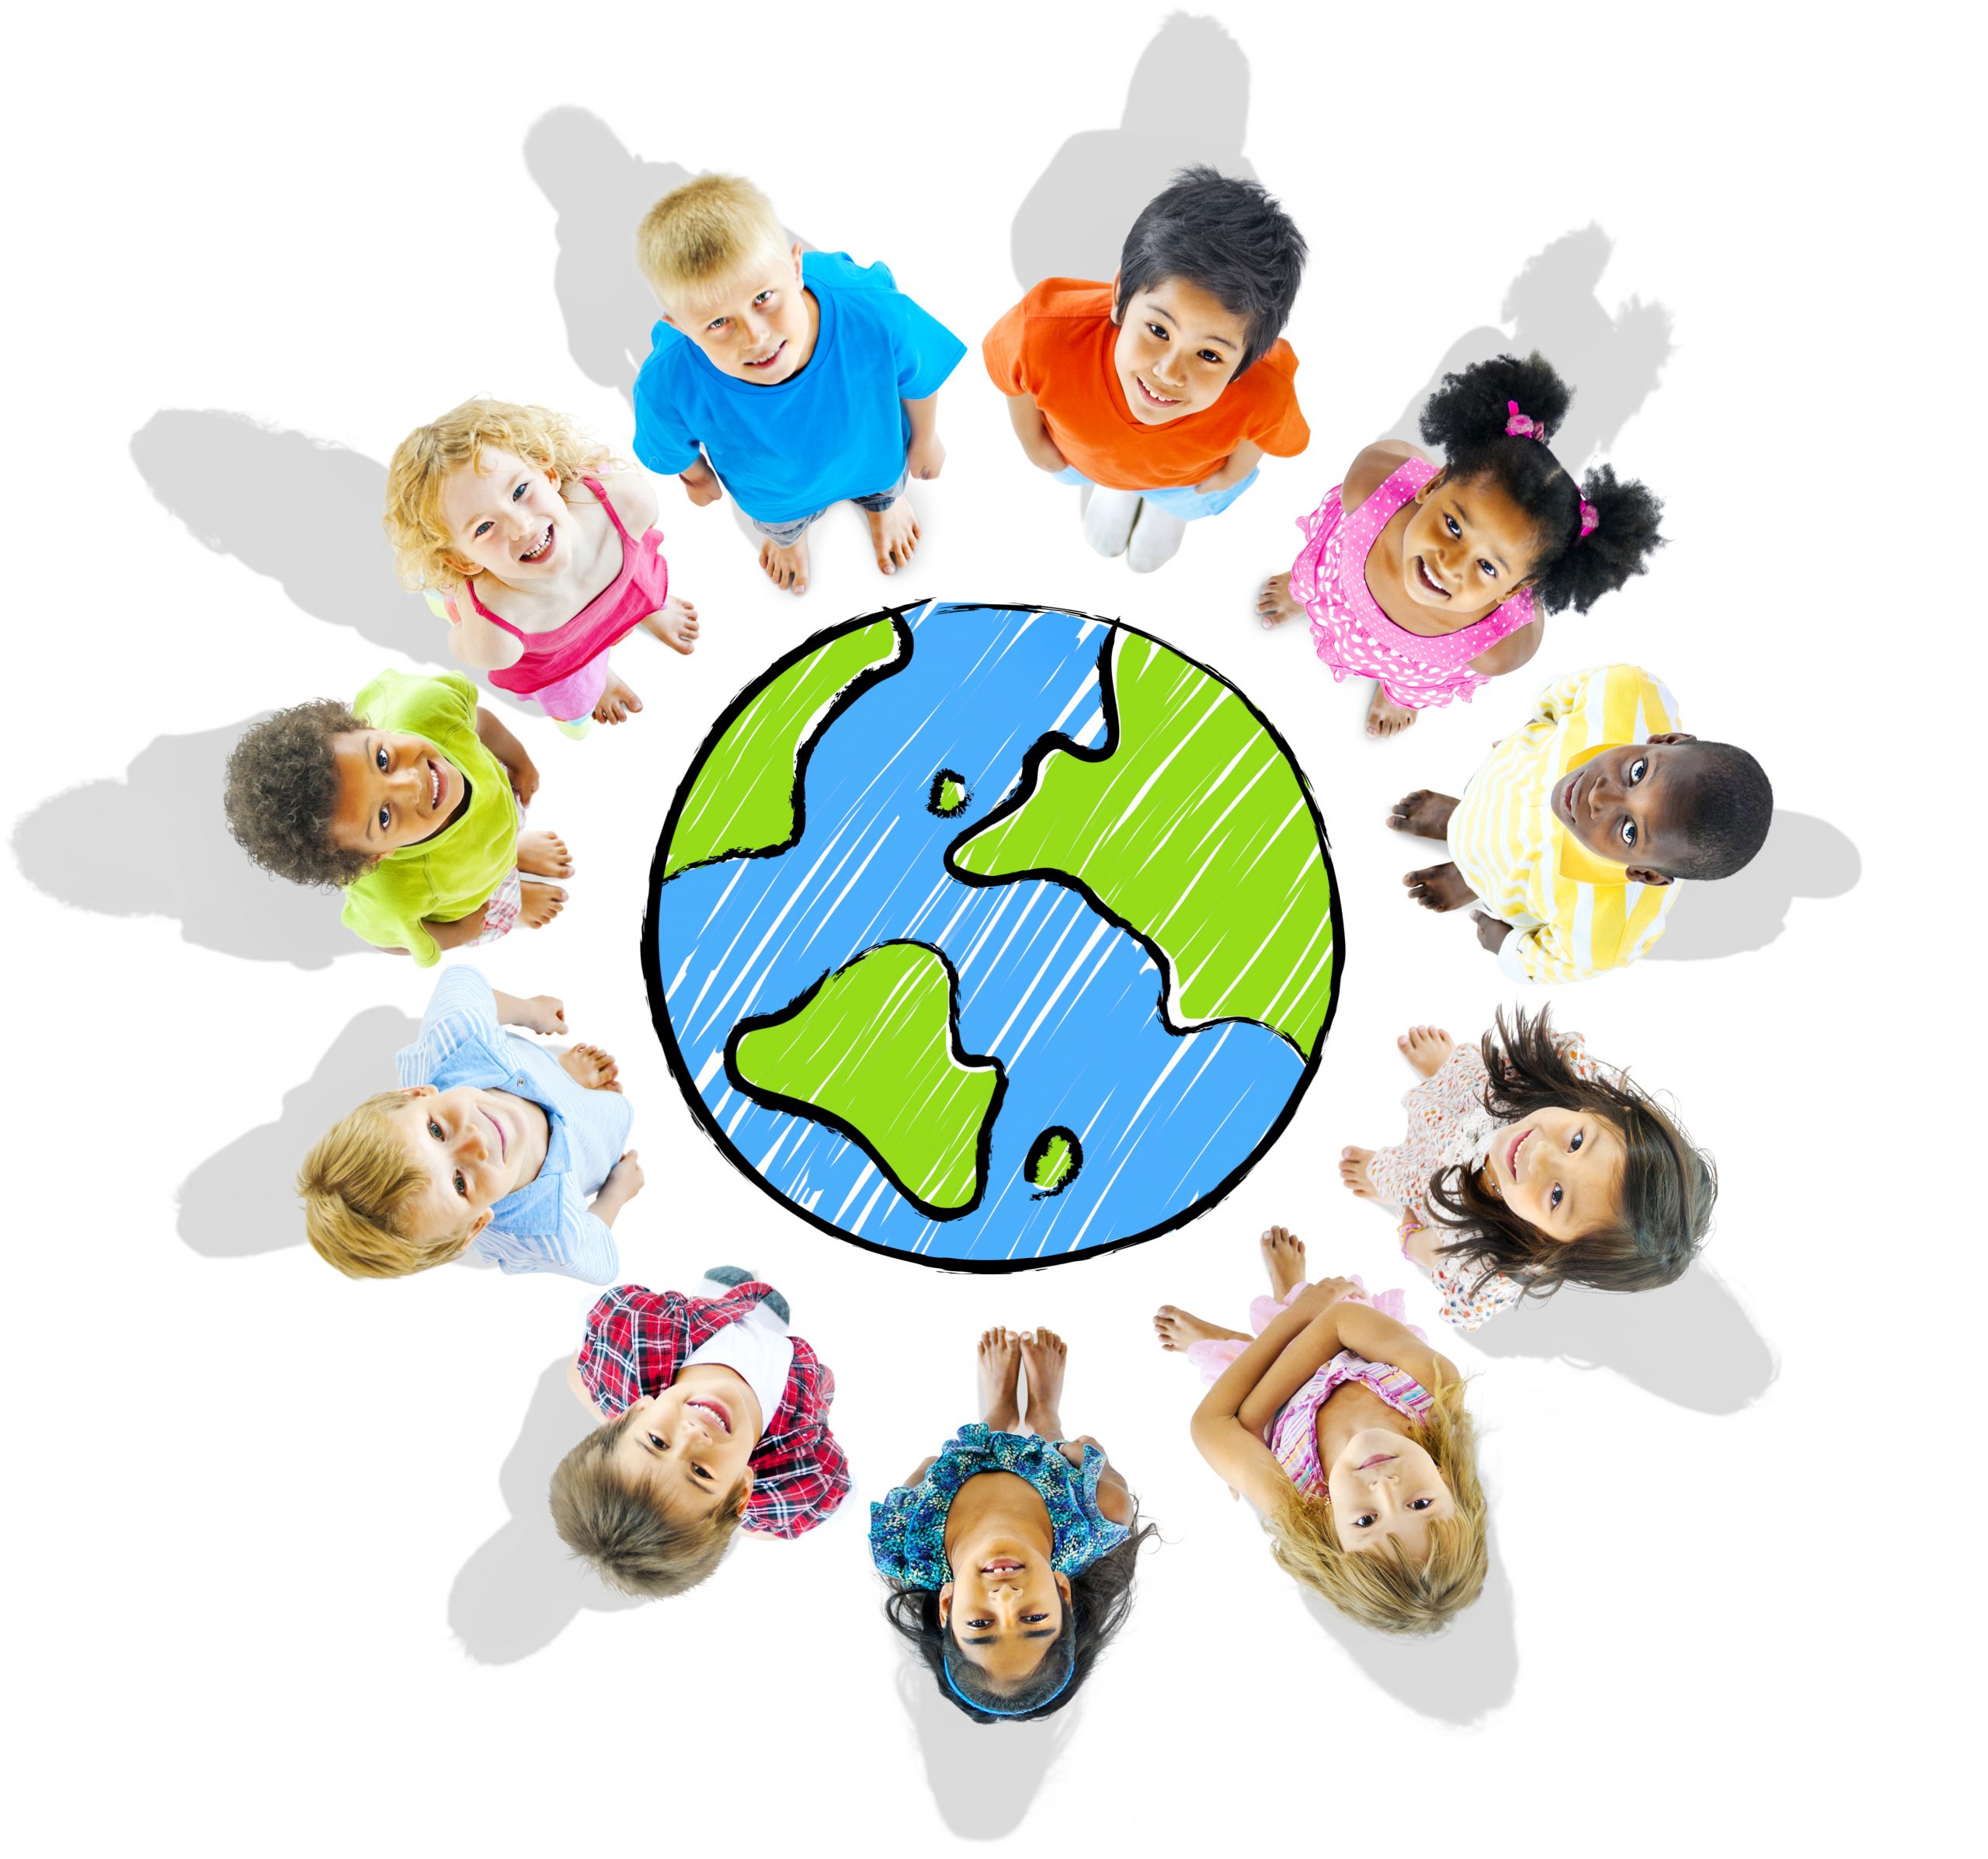 niños en circulo mirando arriba con el diseño del mundo en el centro